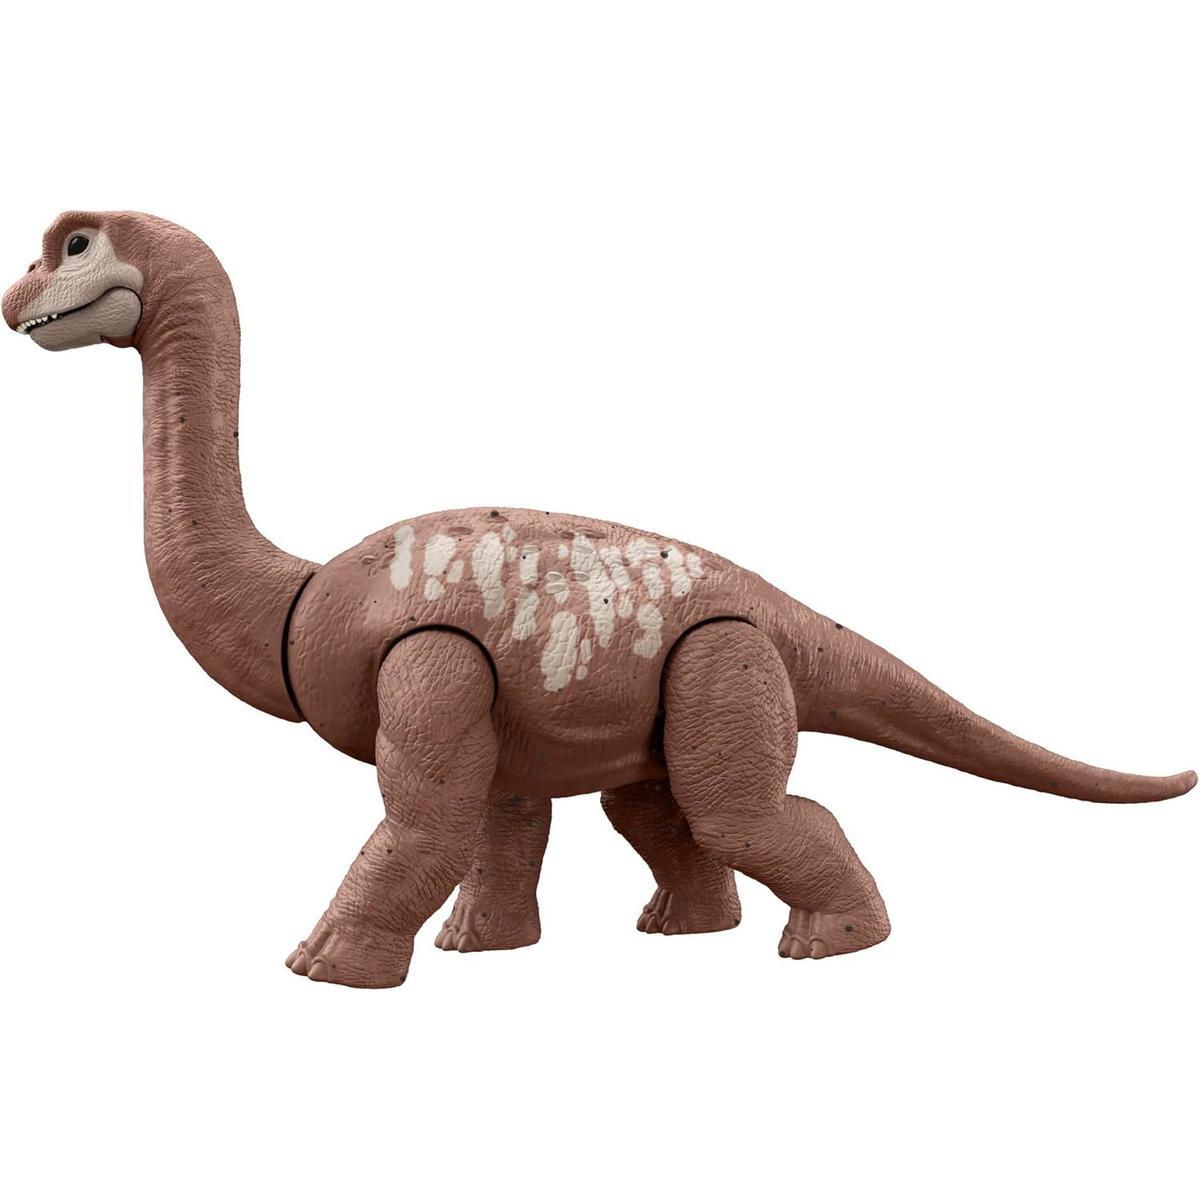 Jurassic world dino trackers park jurajski figurka dinozaur brachiosaurus nr. 4